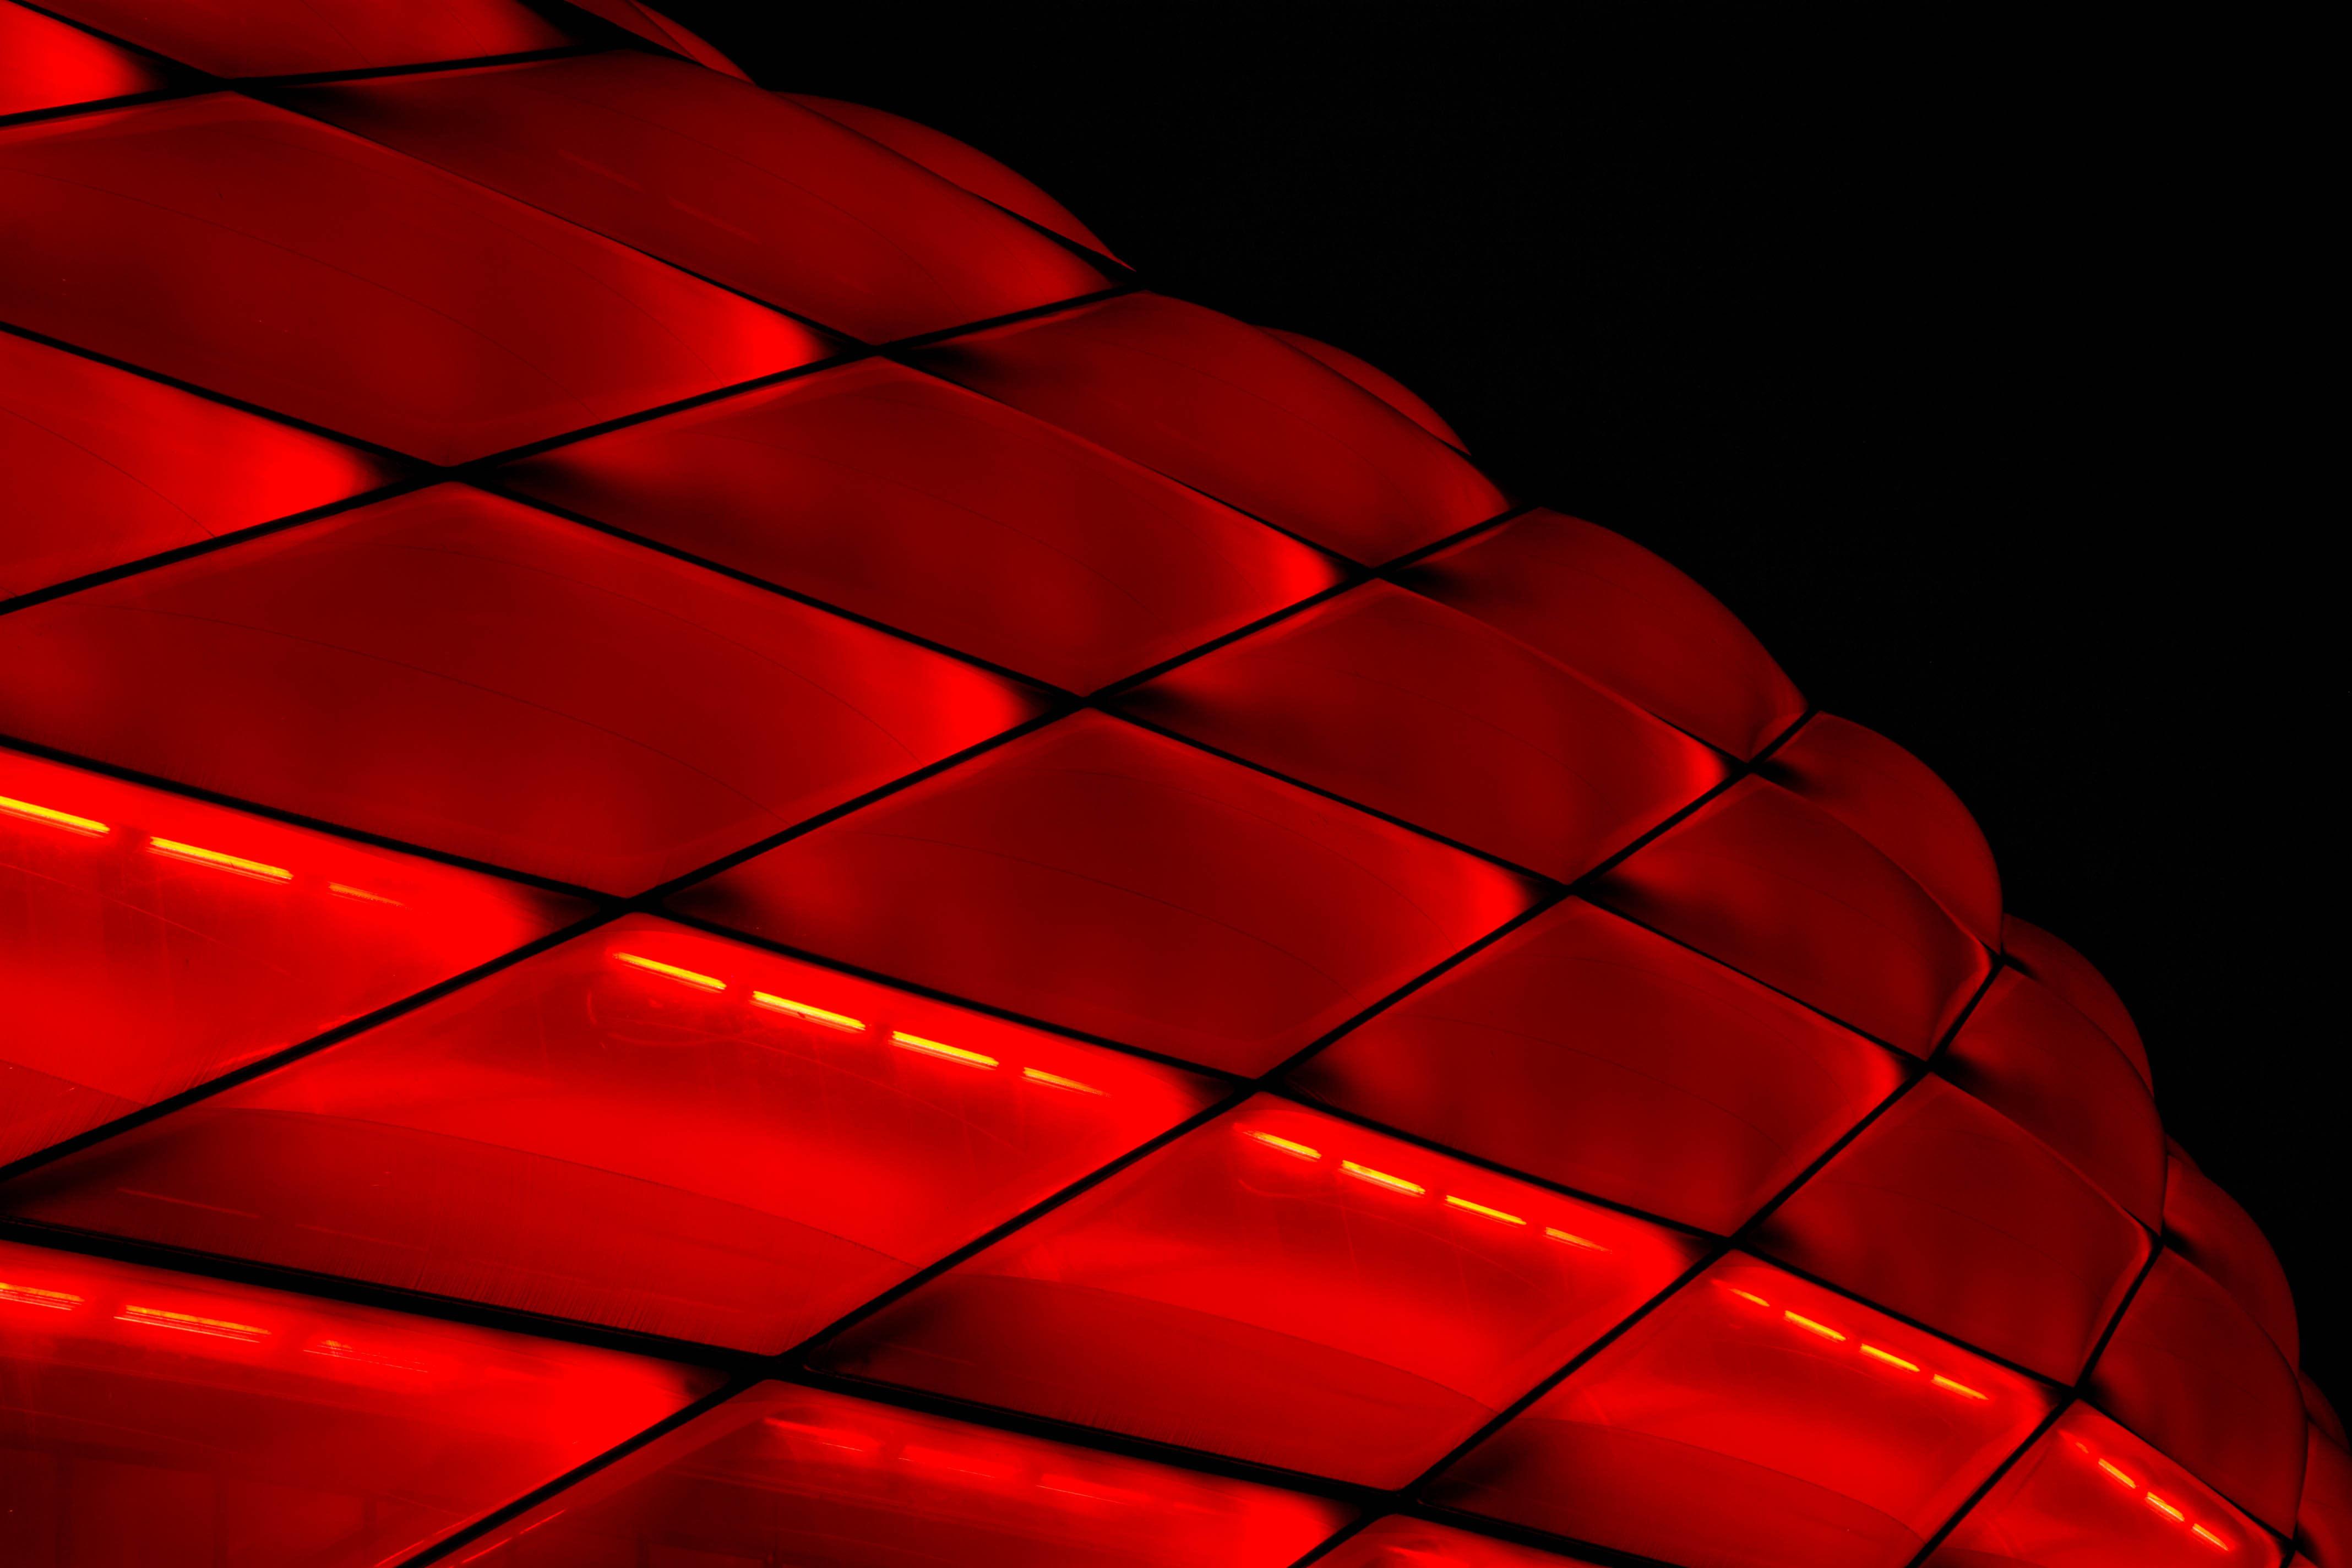 Lock Screen PC Wallpaper backlight, architecture, red, building, miscellanea, miscellaneous, grid, illumination, facade